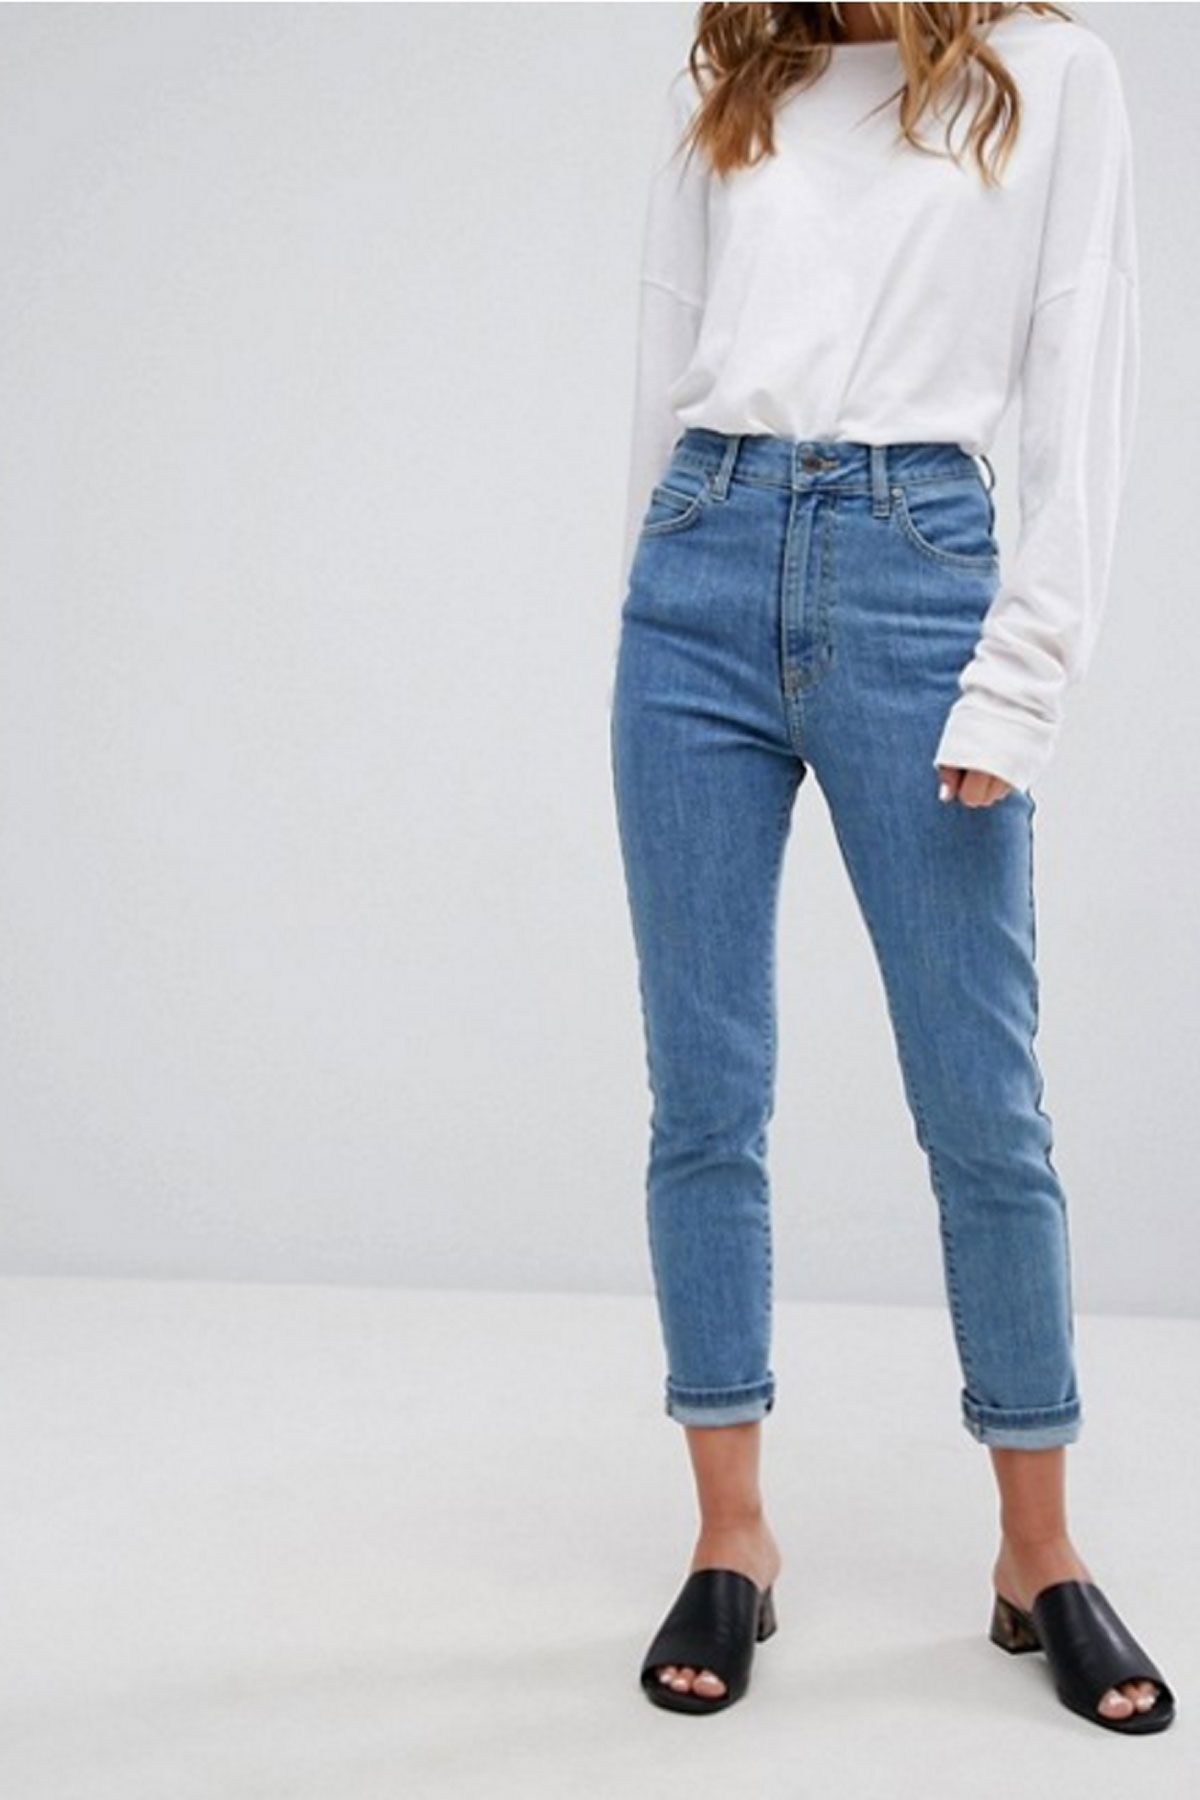 Джинсы мом женские что это. Левайс джинсы женские мом. Левайс момы джинсы мом женские. Джинсы мом с завышенной талией. Укороченные джинсы левайс.